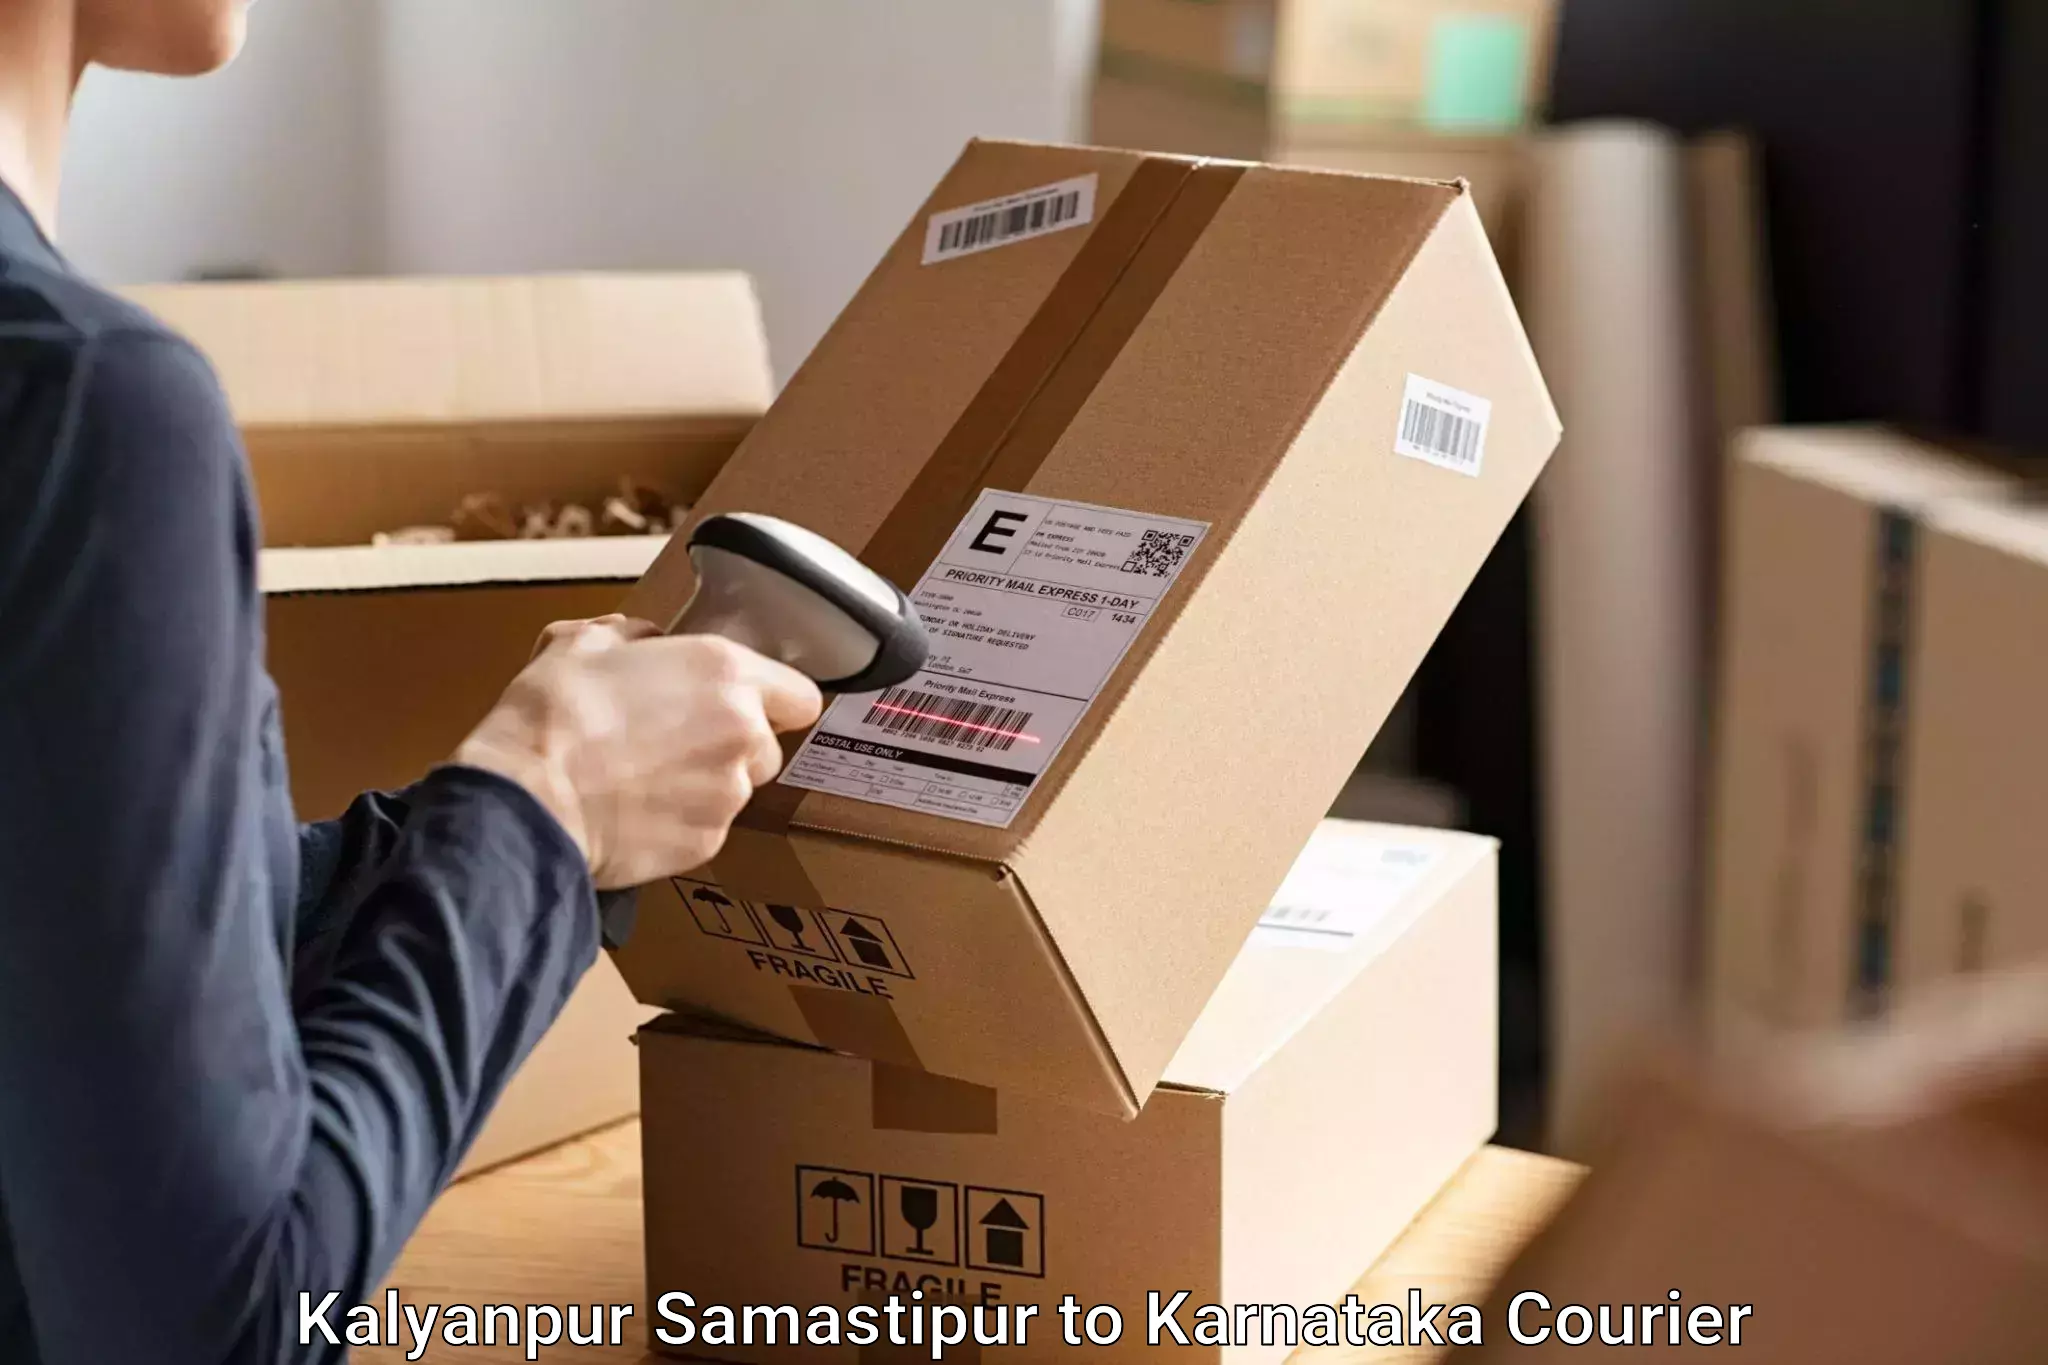 Baggage transport innovation Kalyanpur Samastipur to Ballari